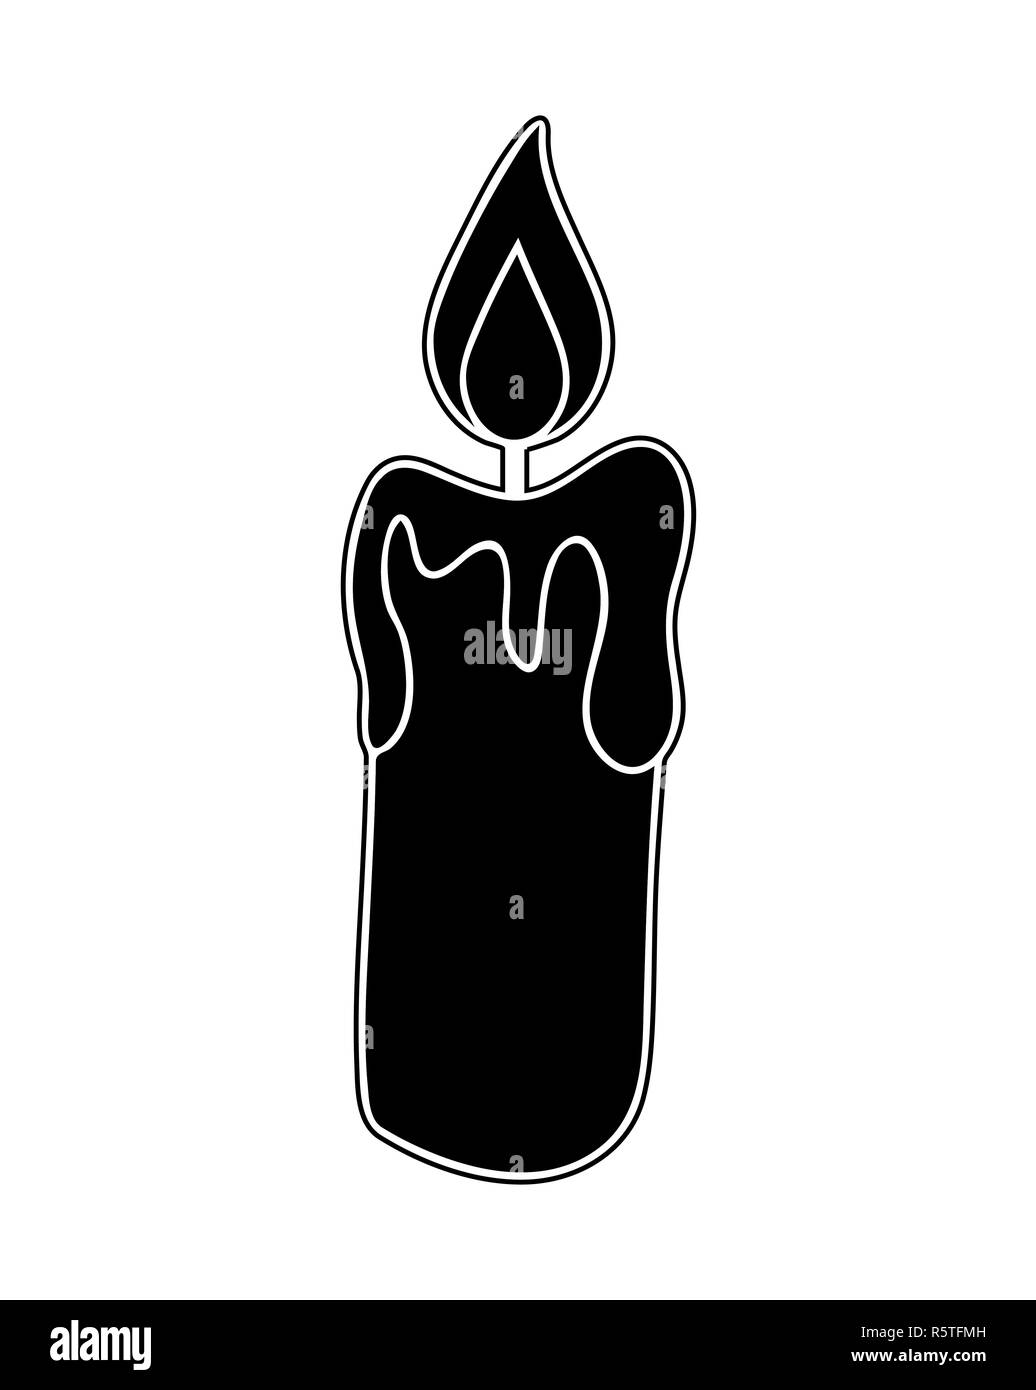 Christmas candle, masterizzazione icona di cera, simbolo, design silhouette. Inverno illustrazione vettoriale isolati su sfondo bianco. Foto Stock